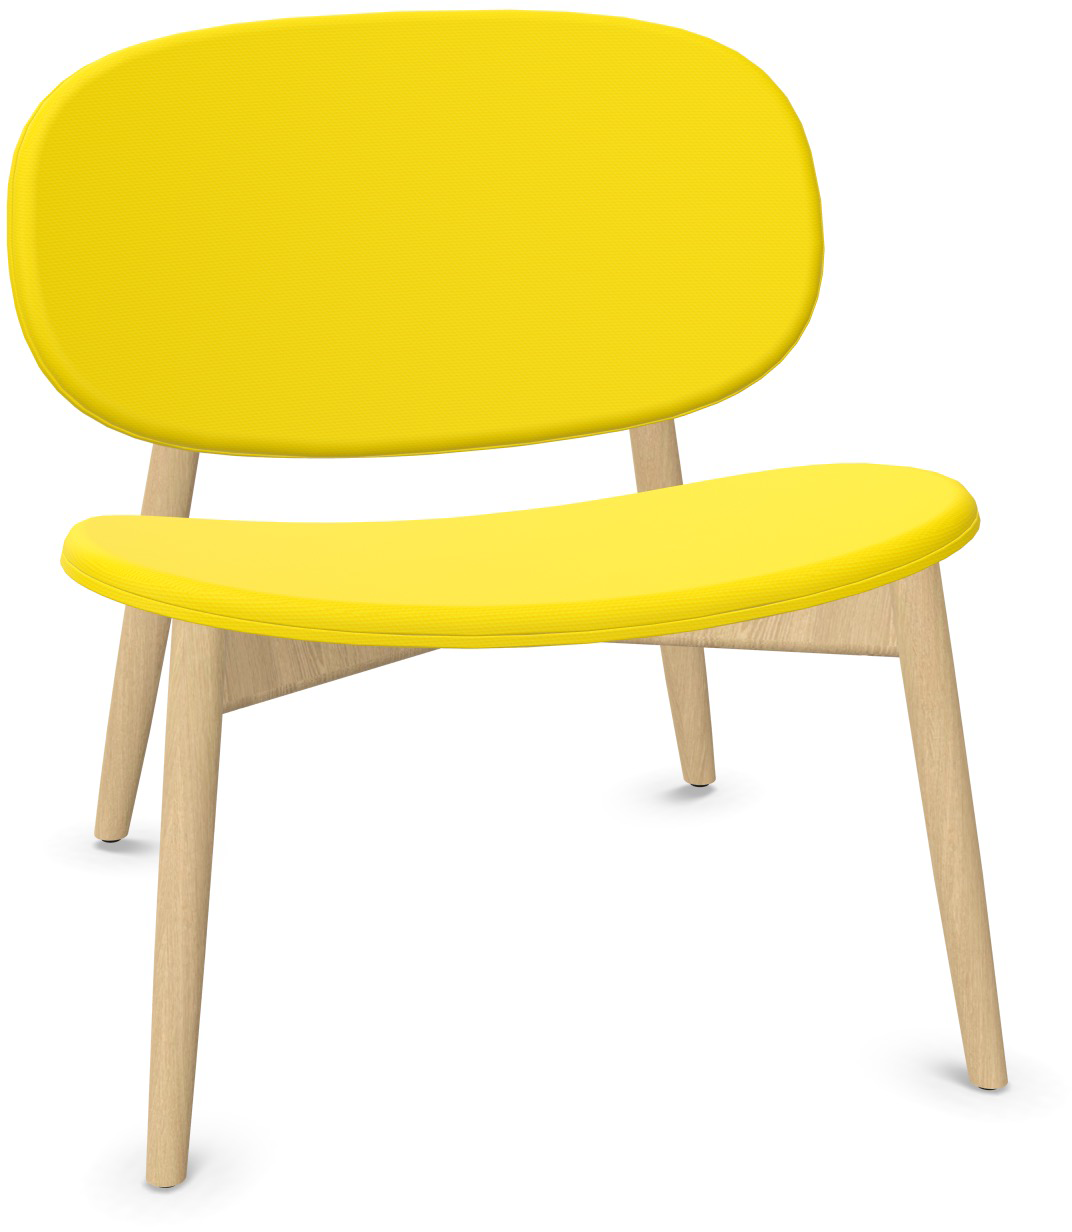 HARMO Relaxsessel in Gelb präsentiert im Onlineshop von KAQTU Design AG. Sessel ist von Infiniti Design